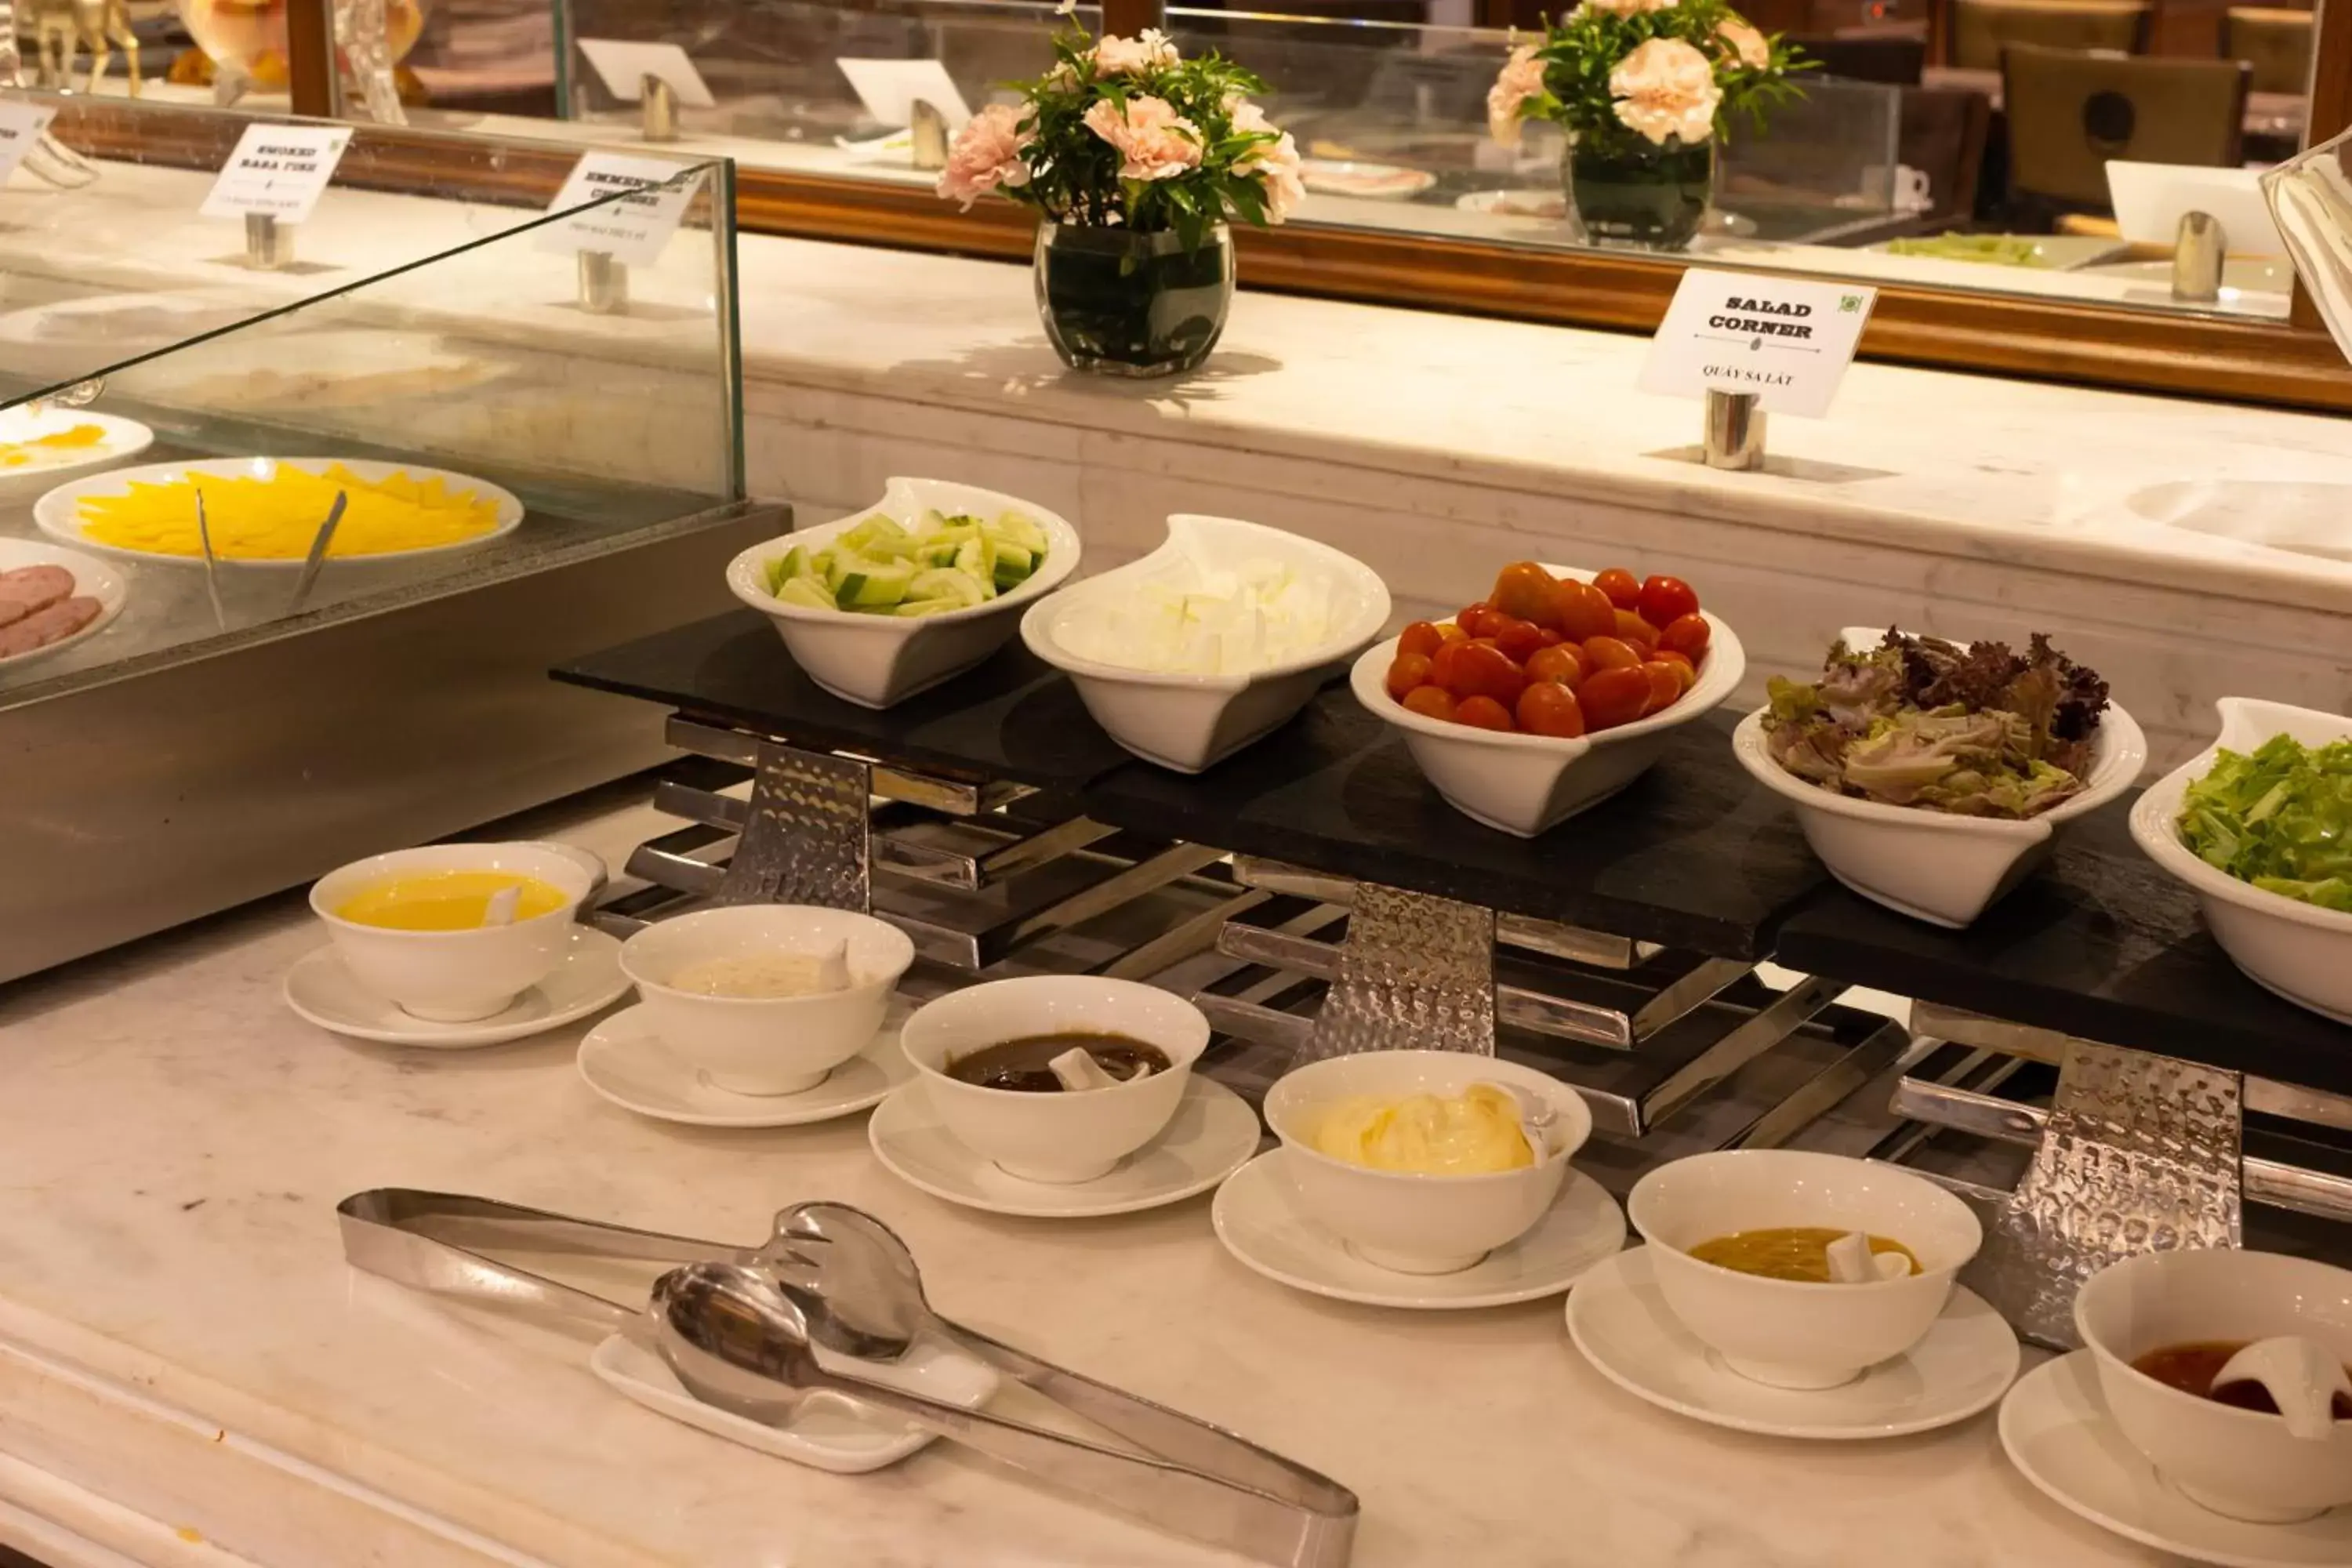 Buffet breakfast in The Lapis Hotel